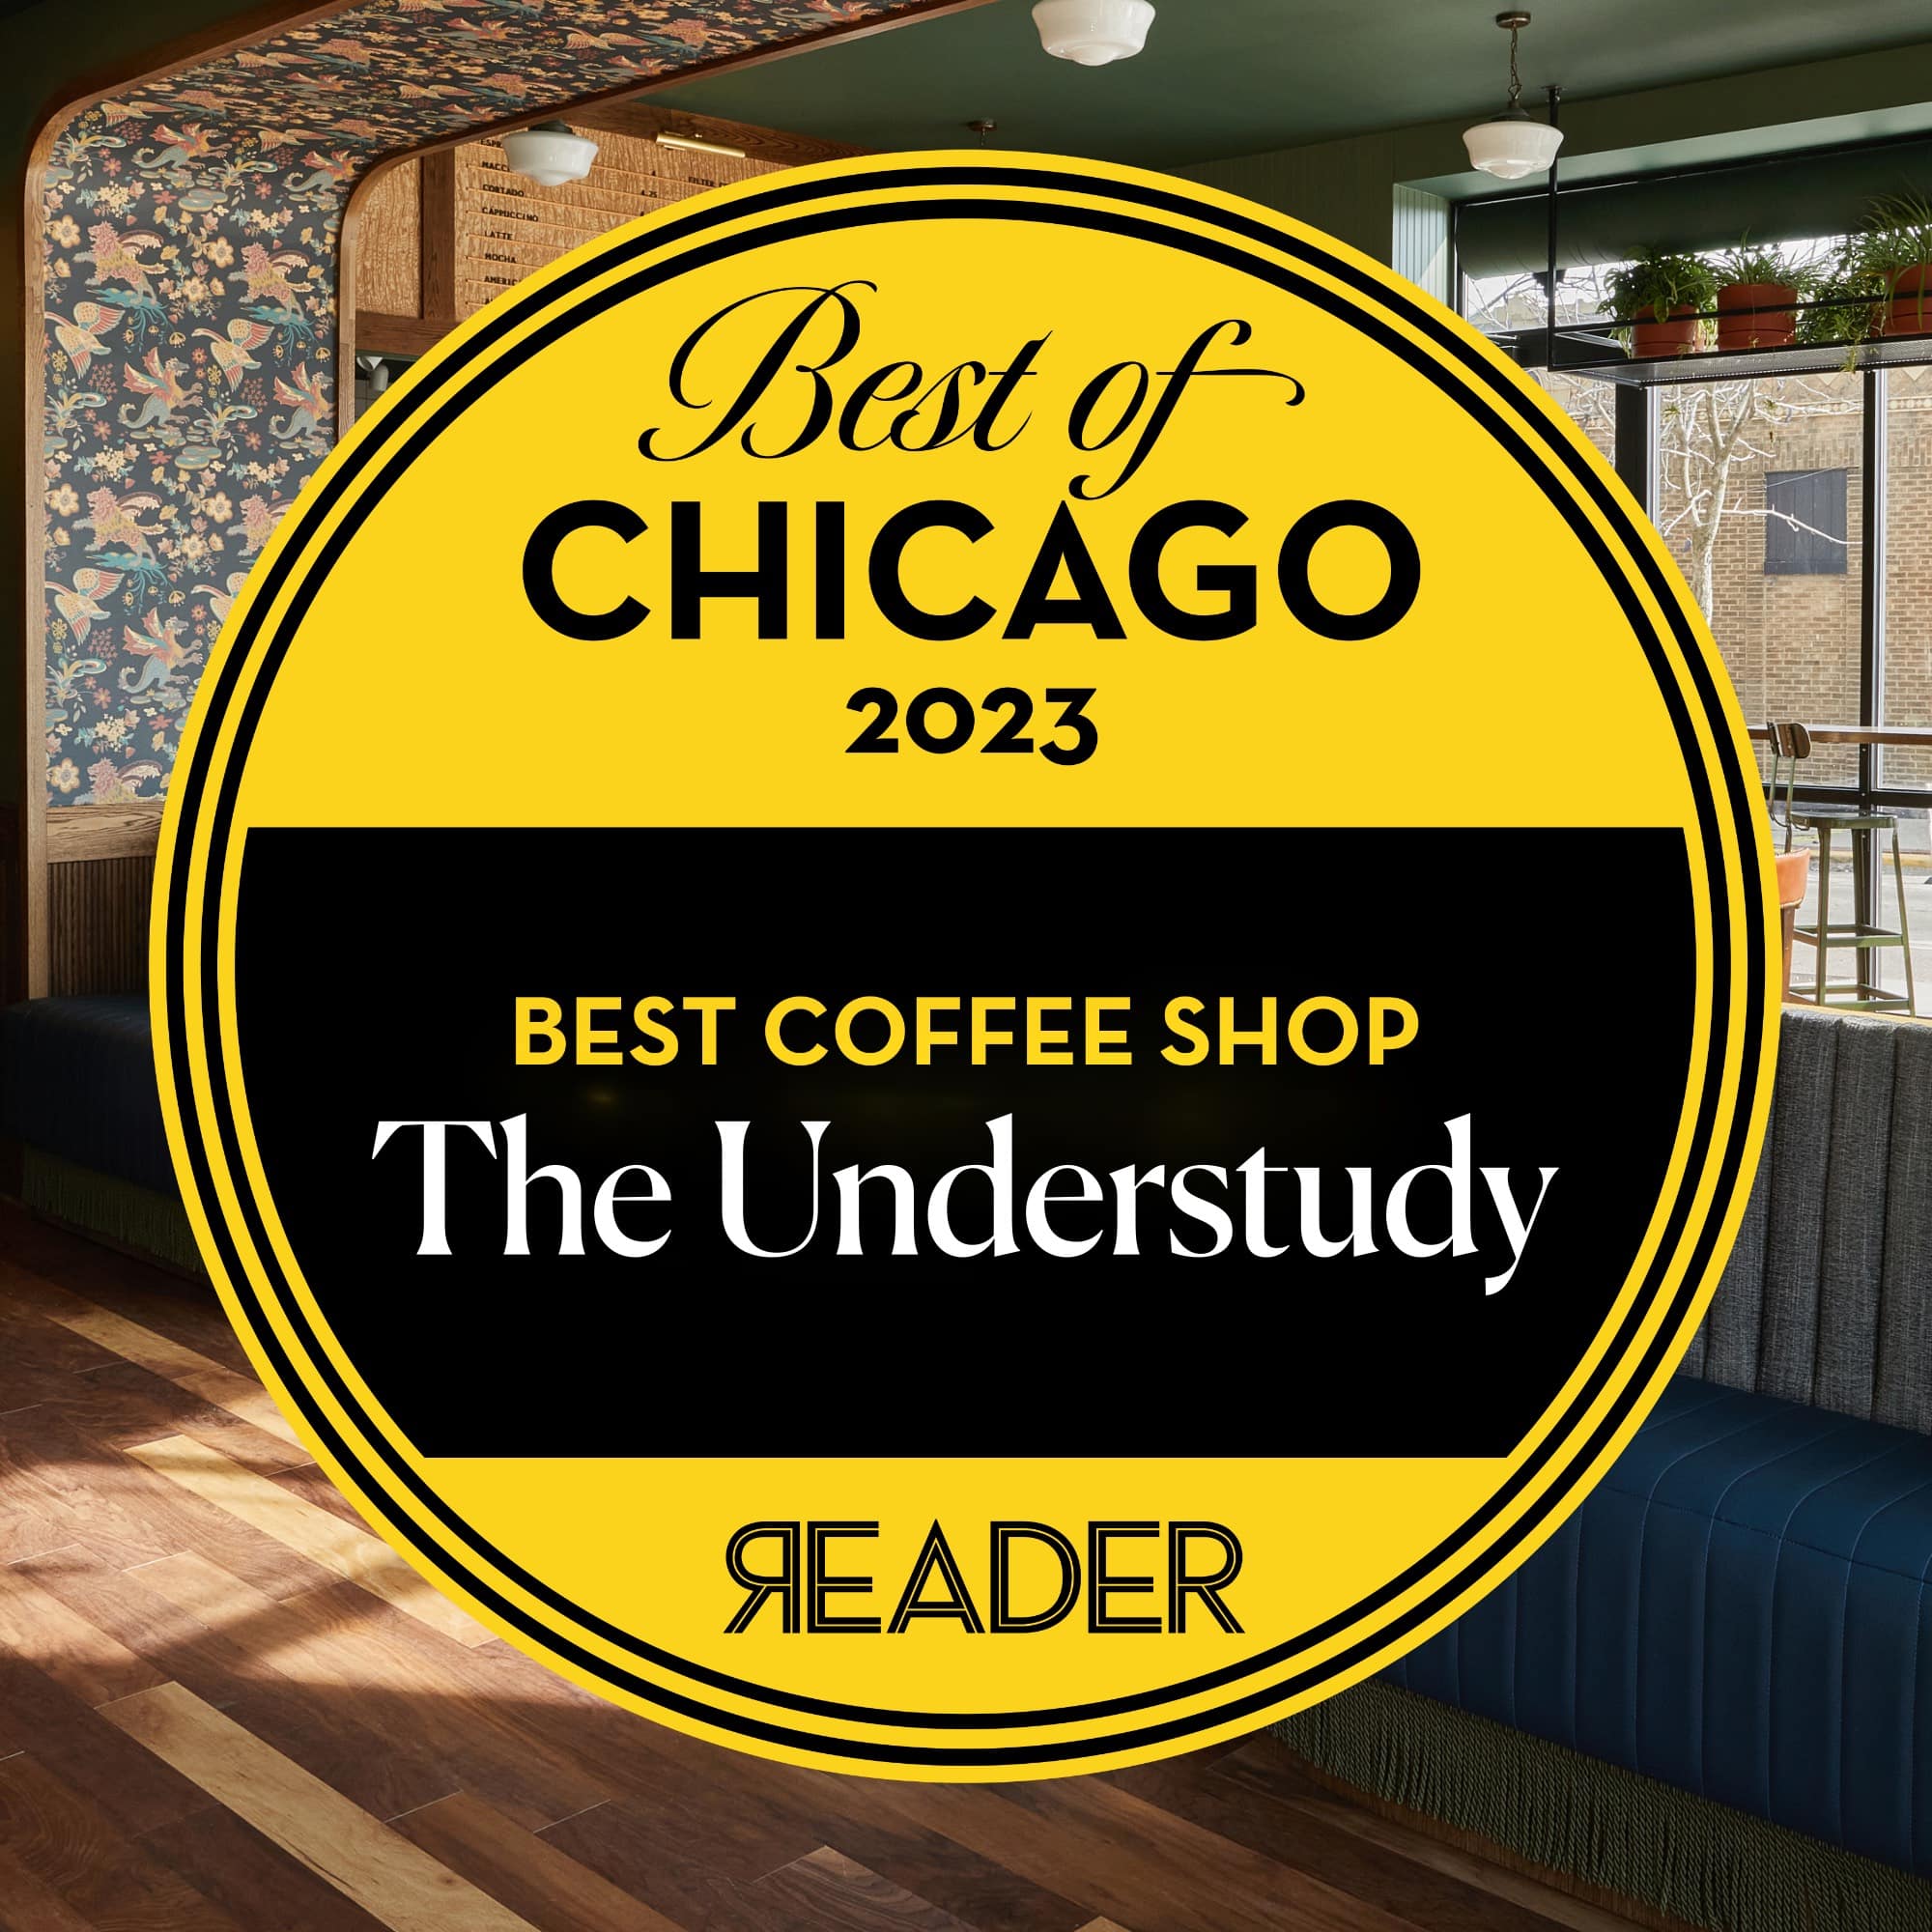 Chicago Reader Best Coffee Shop 2023